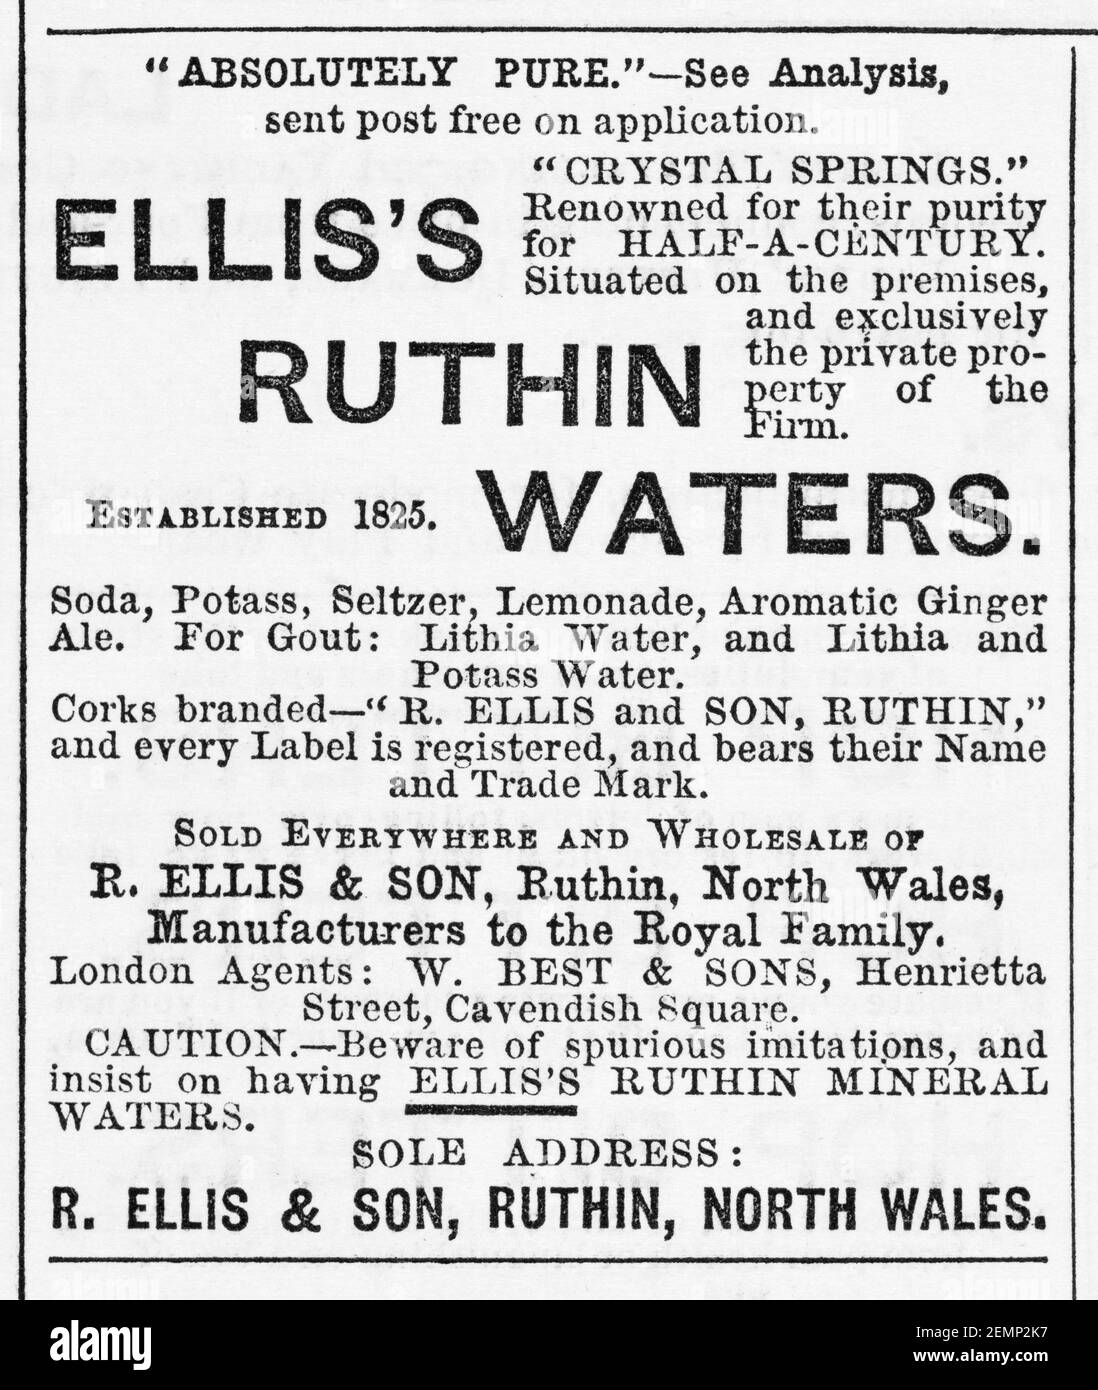 Vecchia rivista vittoriana giornale Elliis's tonic Waters spot dal 1883 - prima dell'alba degli standard pubblicitari. Storia della medicina. Foto Stock